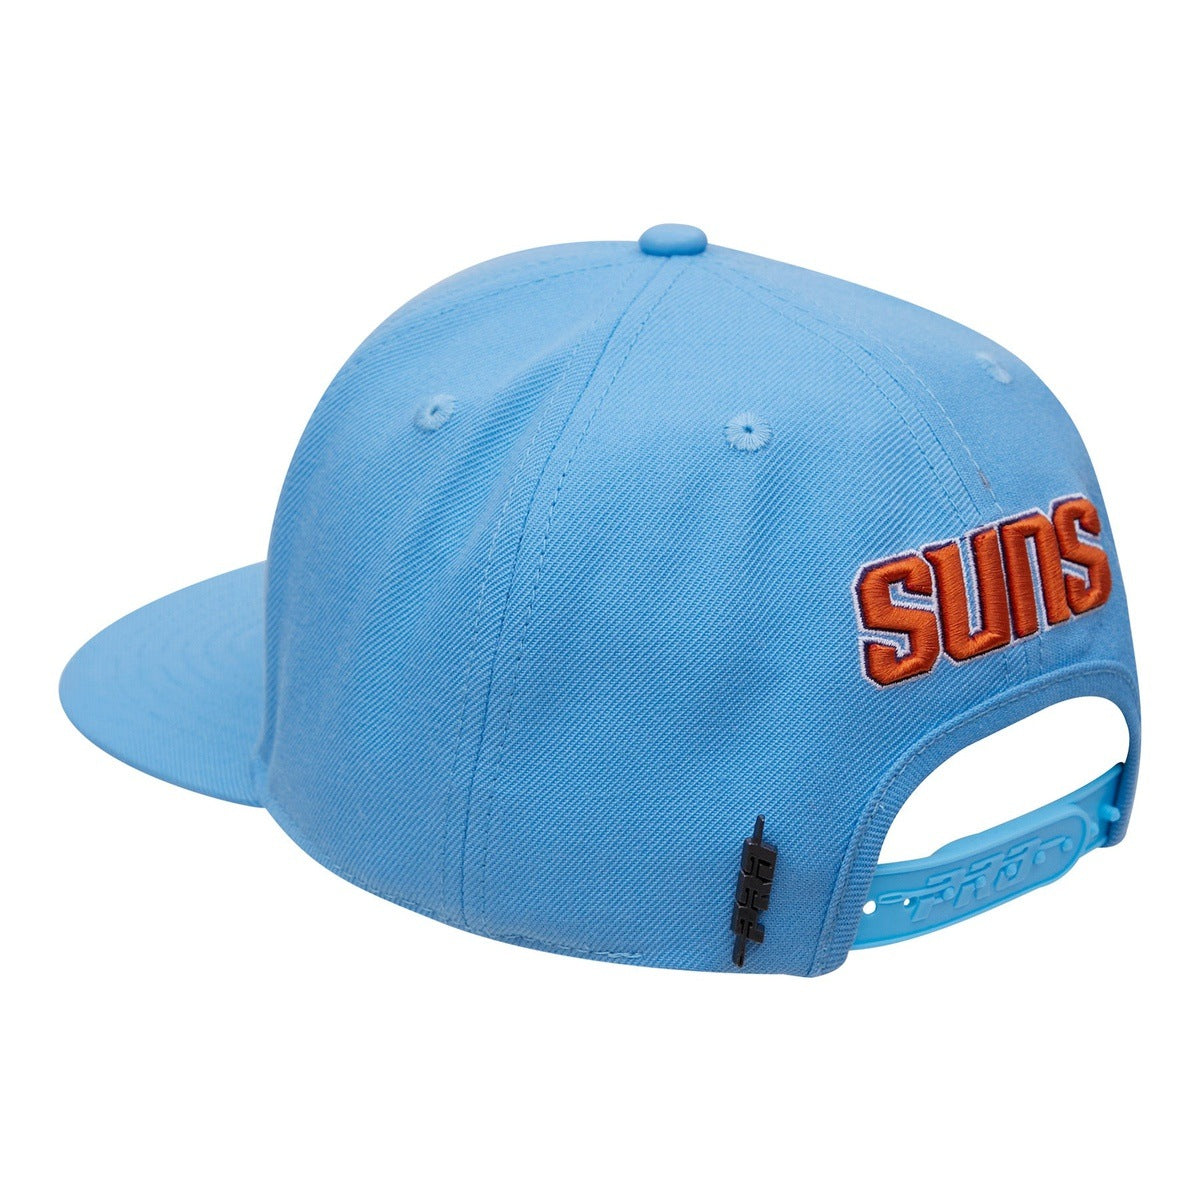 suns hat blue